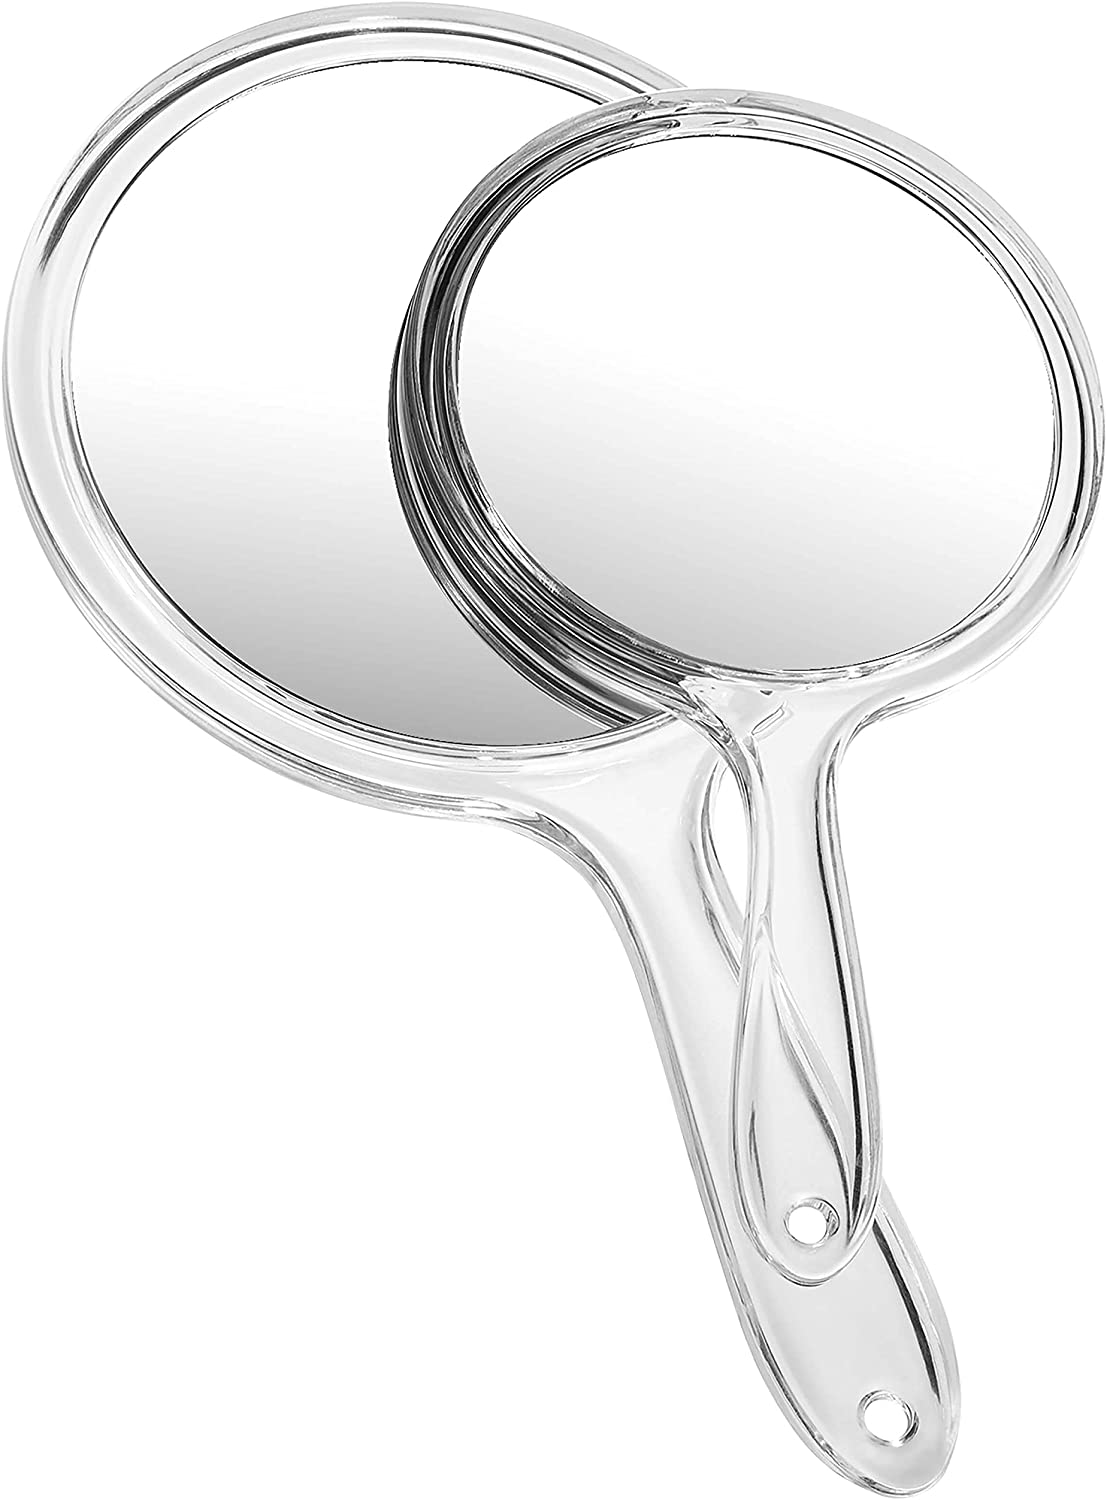 Miroir à main OMIRO, miroir à main double face miroir grossissant 1X/3X avec poignée, lot de 2 (noir transparent)